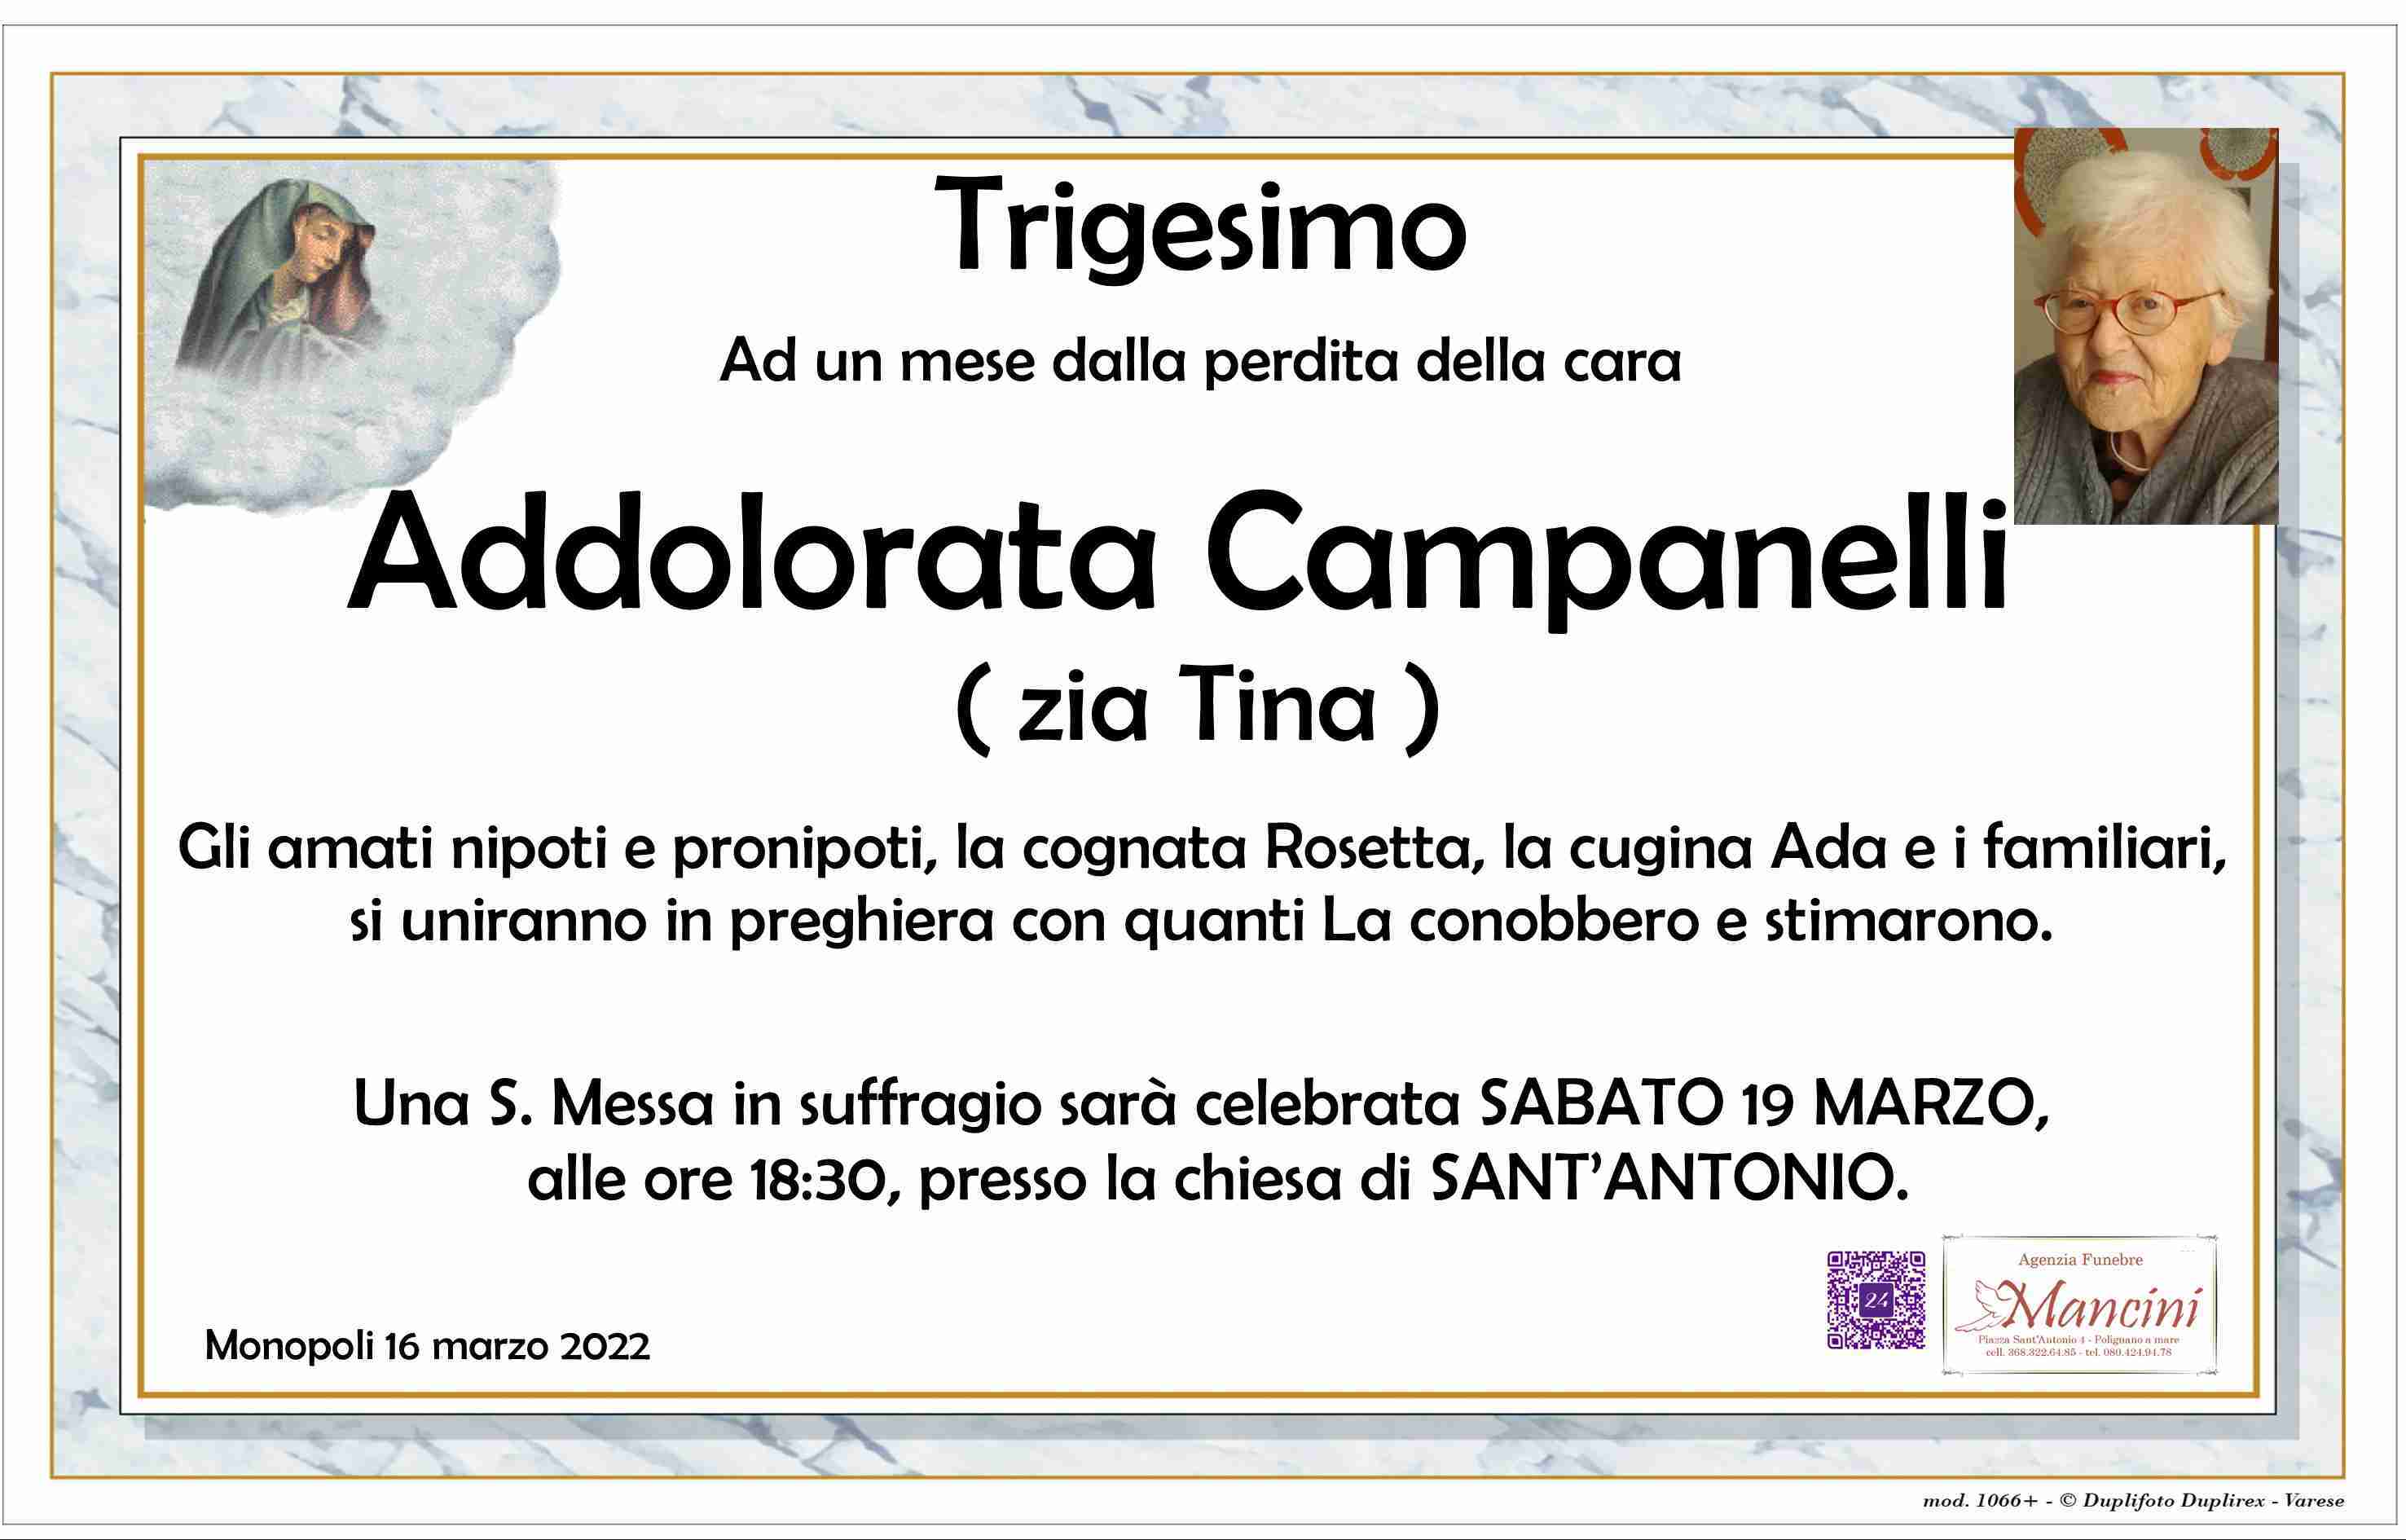 Addolorata Campanelli